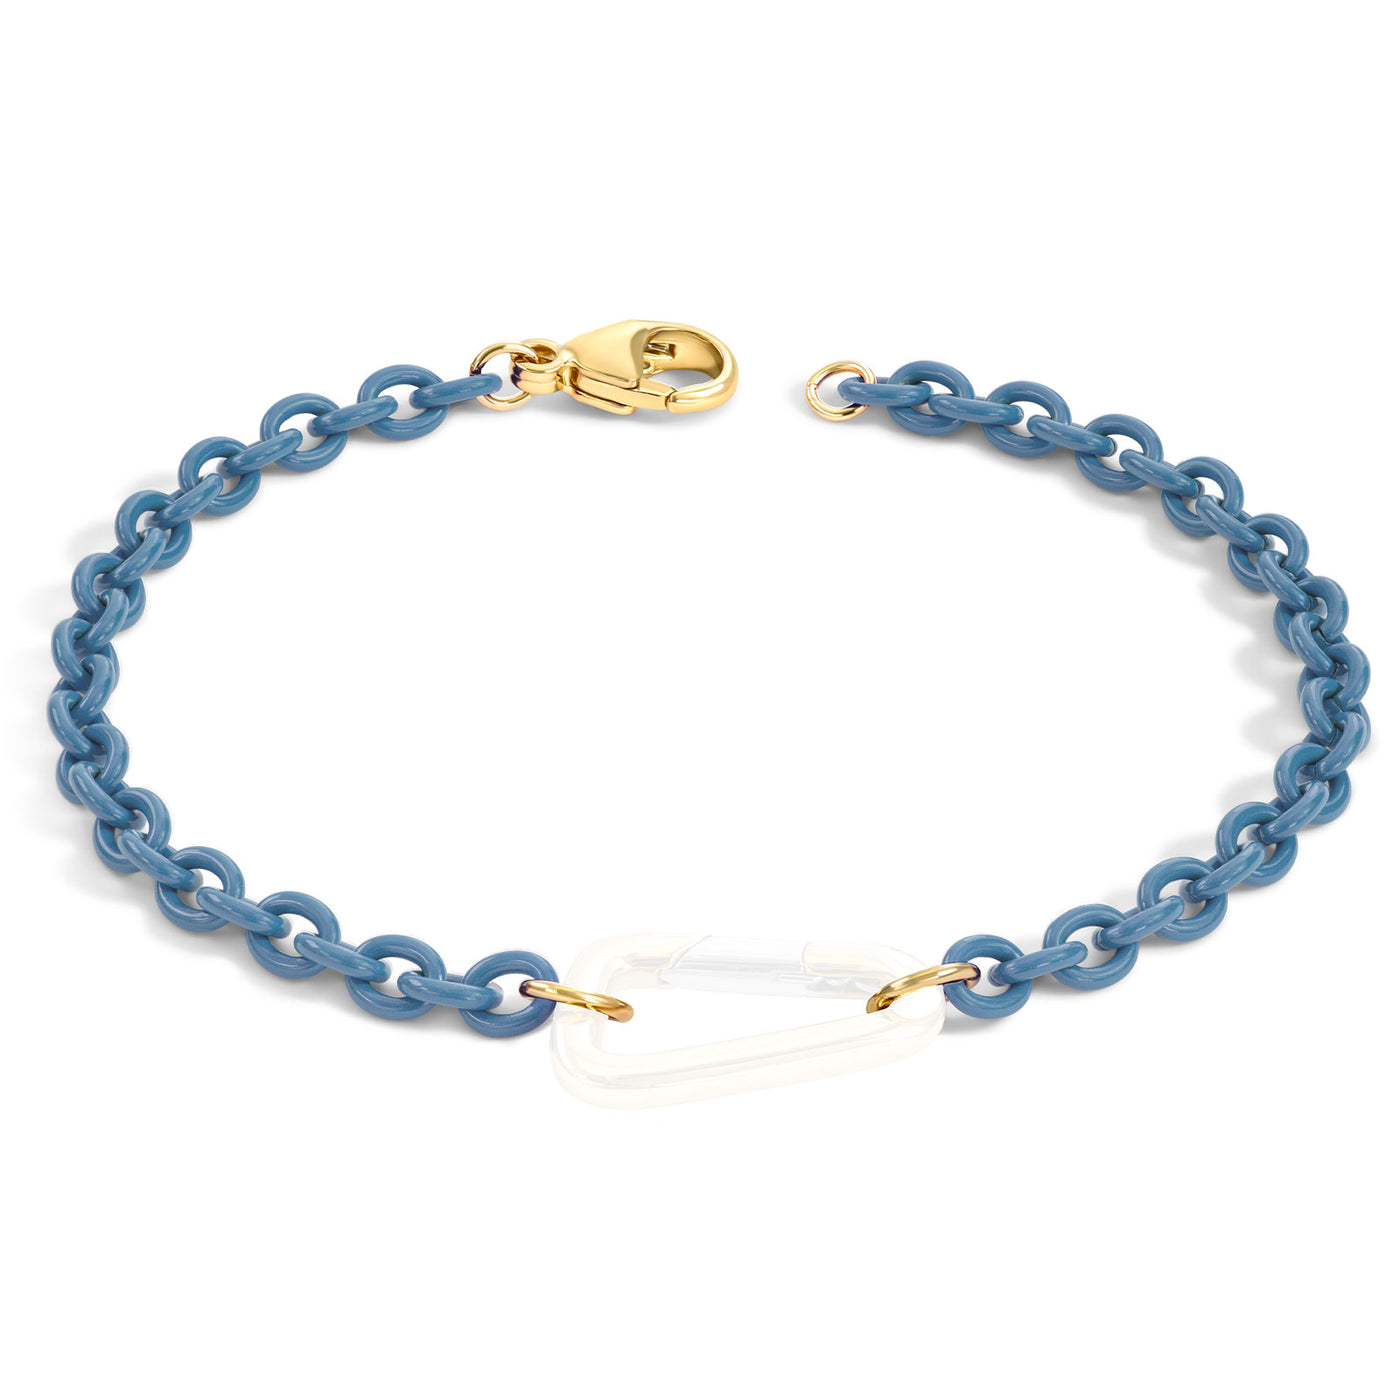 3.8mm Stainless Steel Aqua Blue Chain Hinge Bracelet